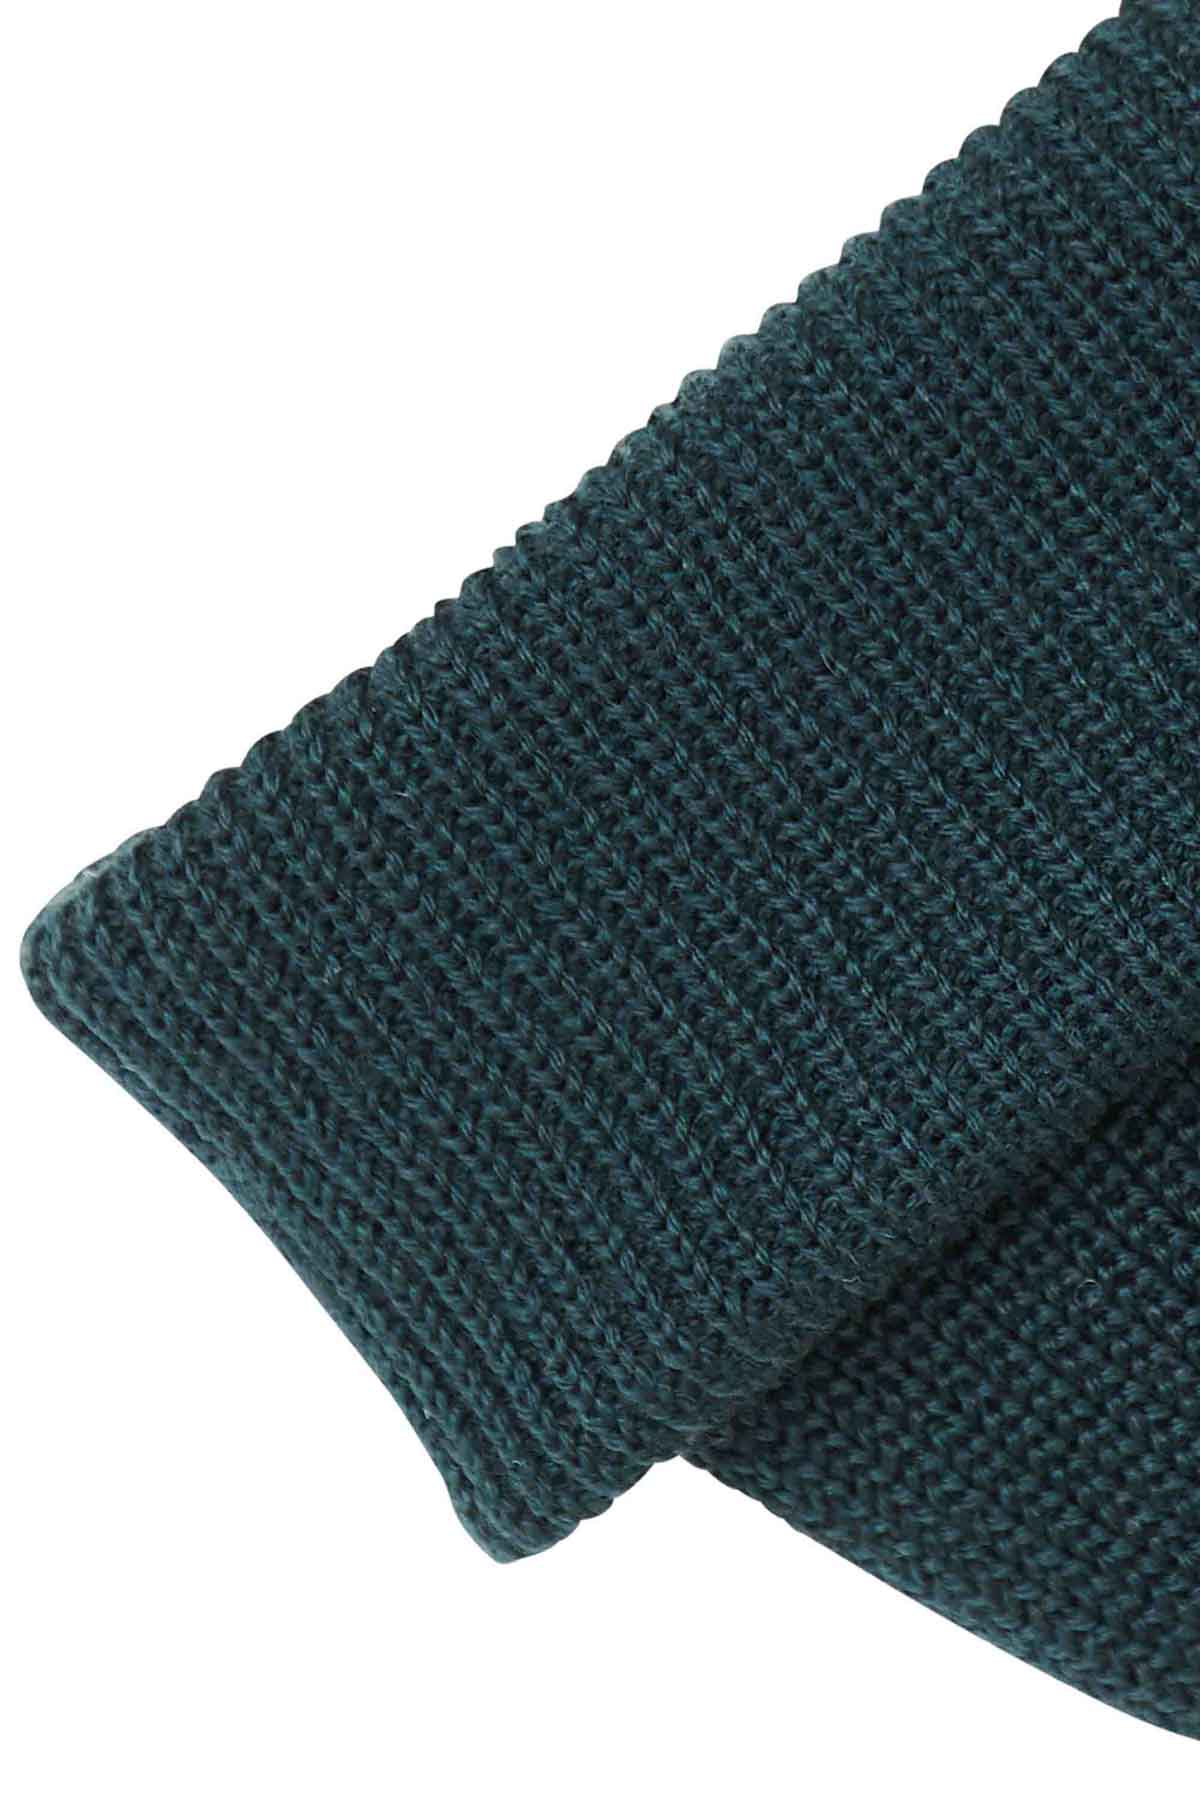 Bonnet Militaire Maille Thinsulate - Chaleur et confort pour l'Hiver  BI-Color MARINE BI-Color MARINE